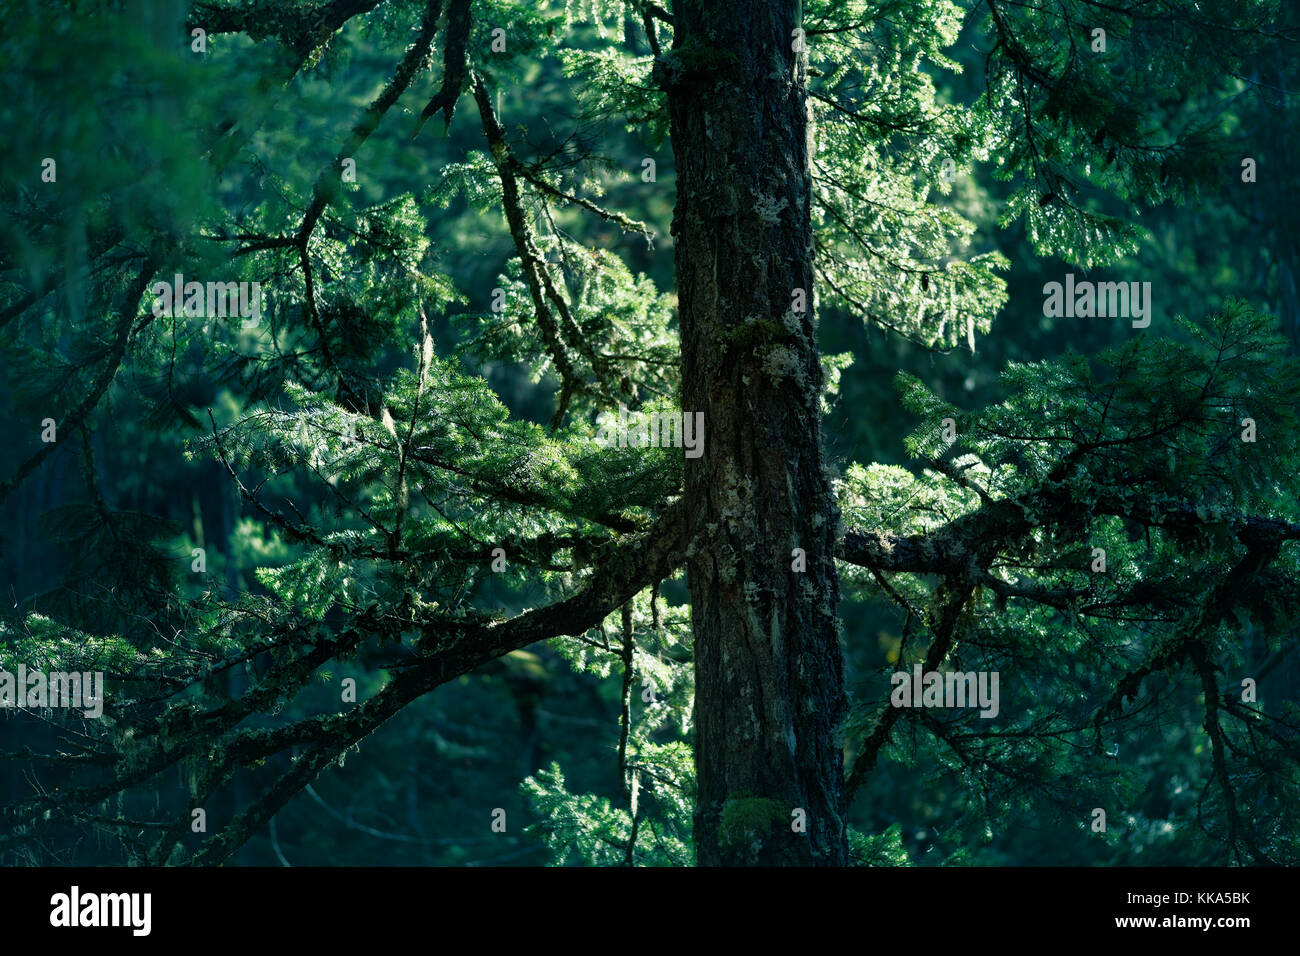 Acercamiento de ramas de abeto duglas brillando en la luz del sol en el verde profundo bosque. La isla de Vancouver, British Columbia, Canadá. Foto de stock